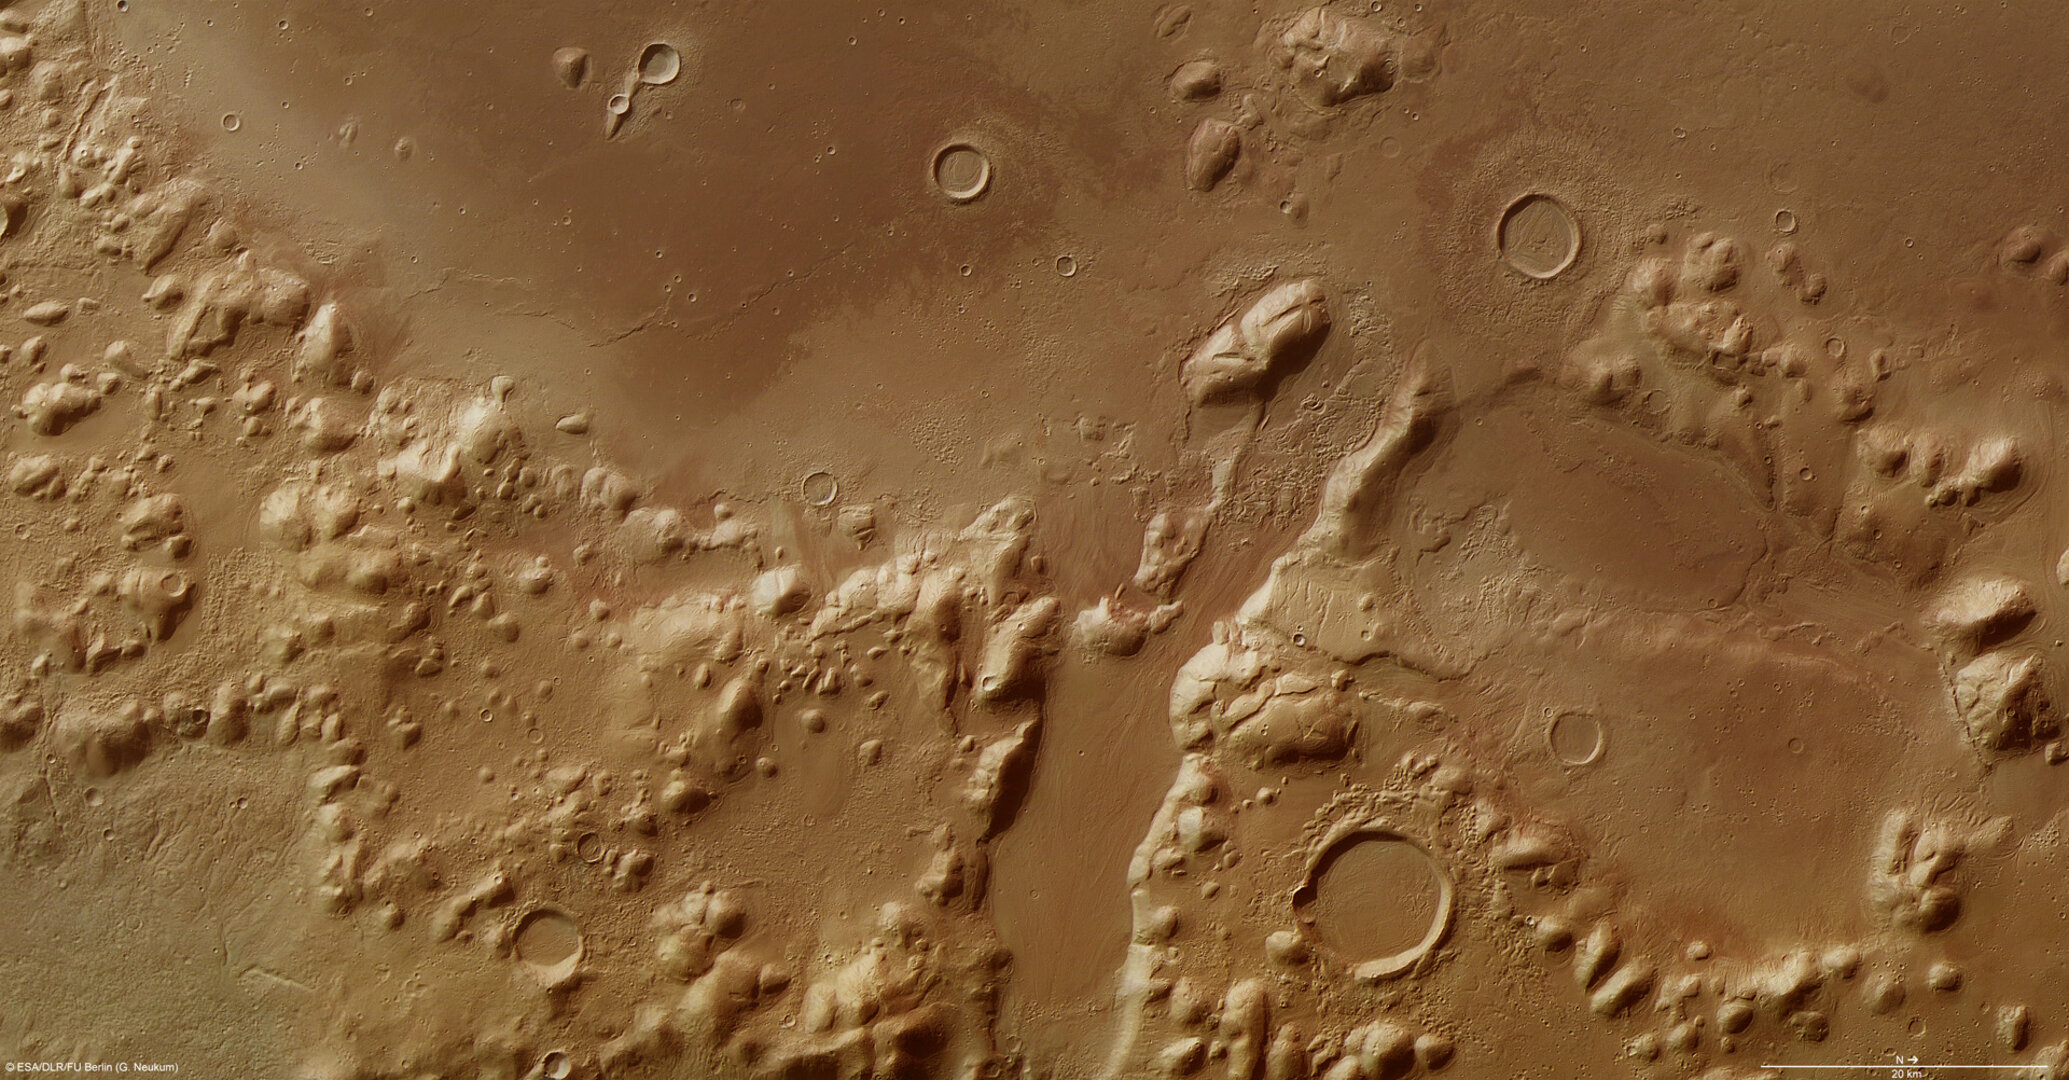 Phlegra Montes on Mars